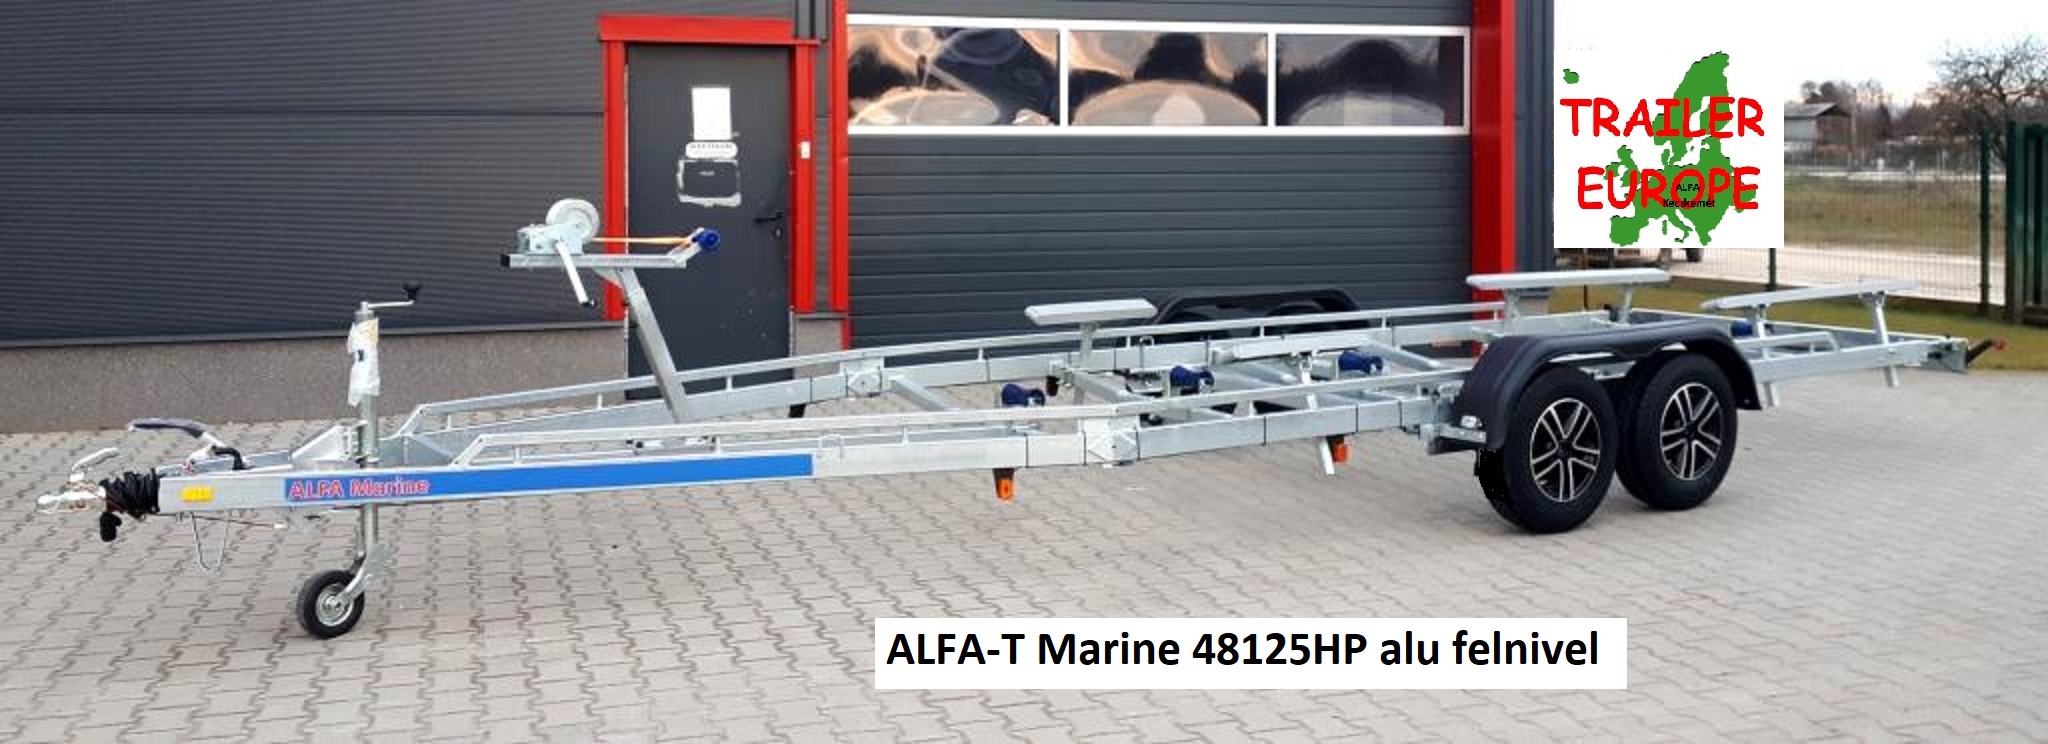 ALFA-T Marine kéttengelyes fékes csónakszállítók 8,50m/28” lábig